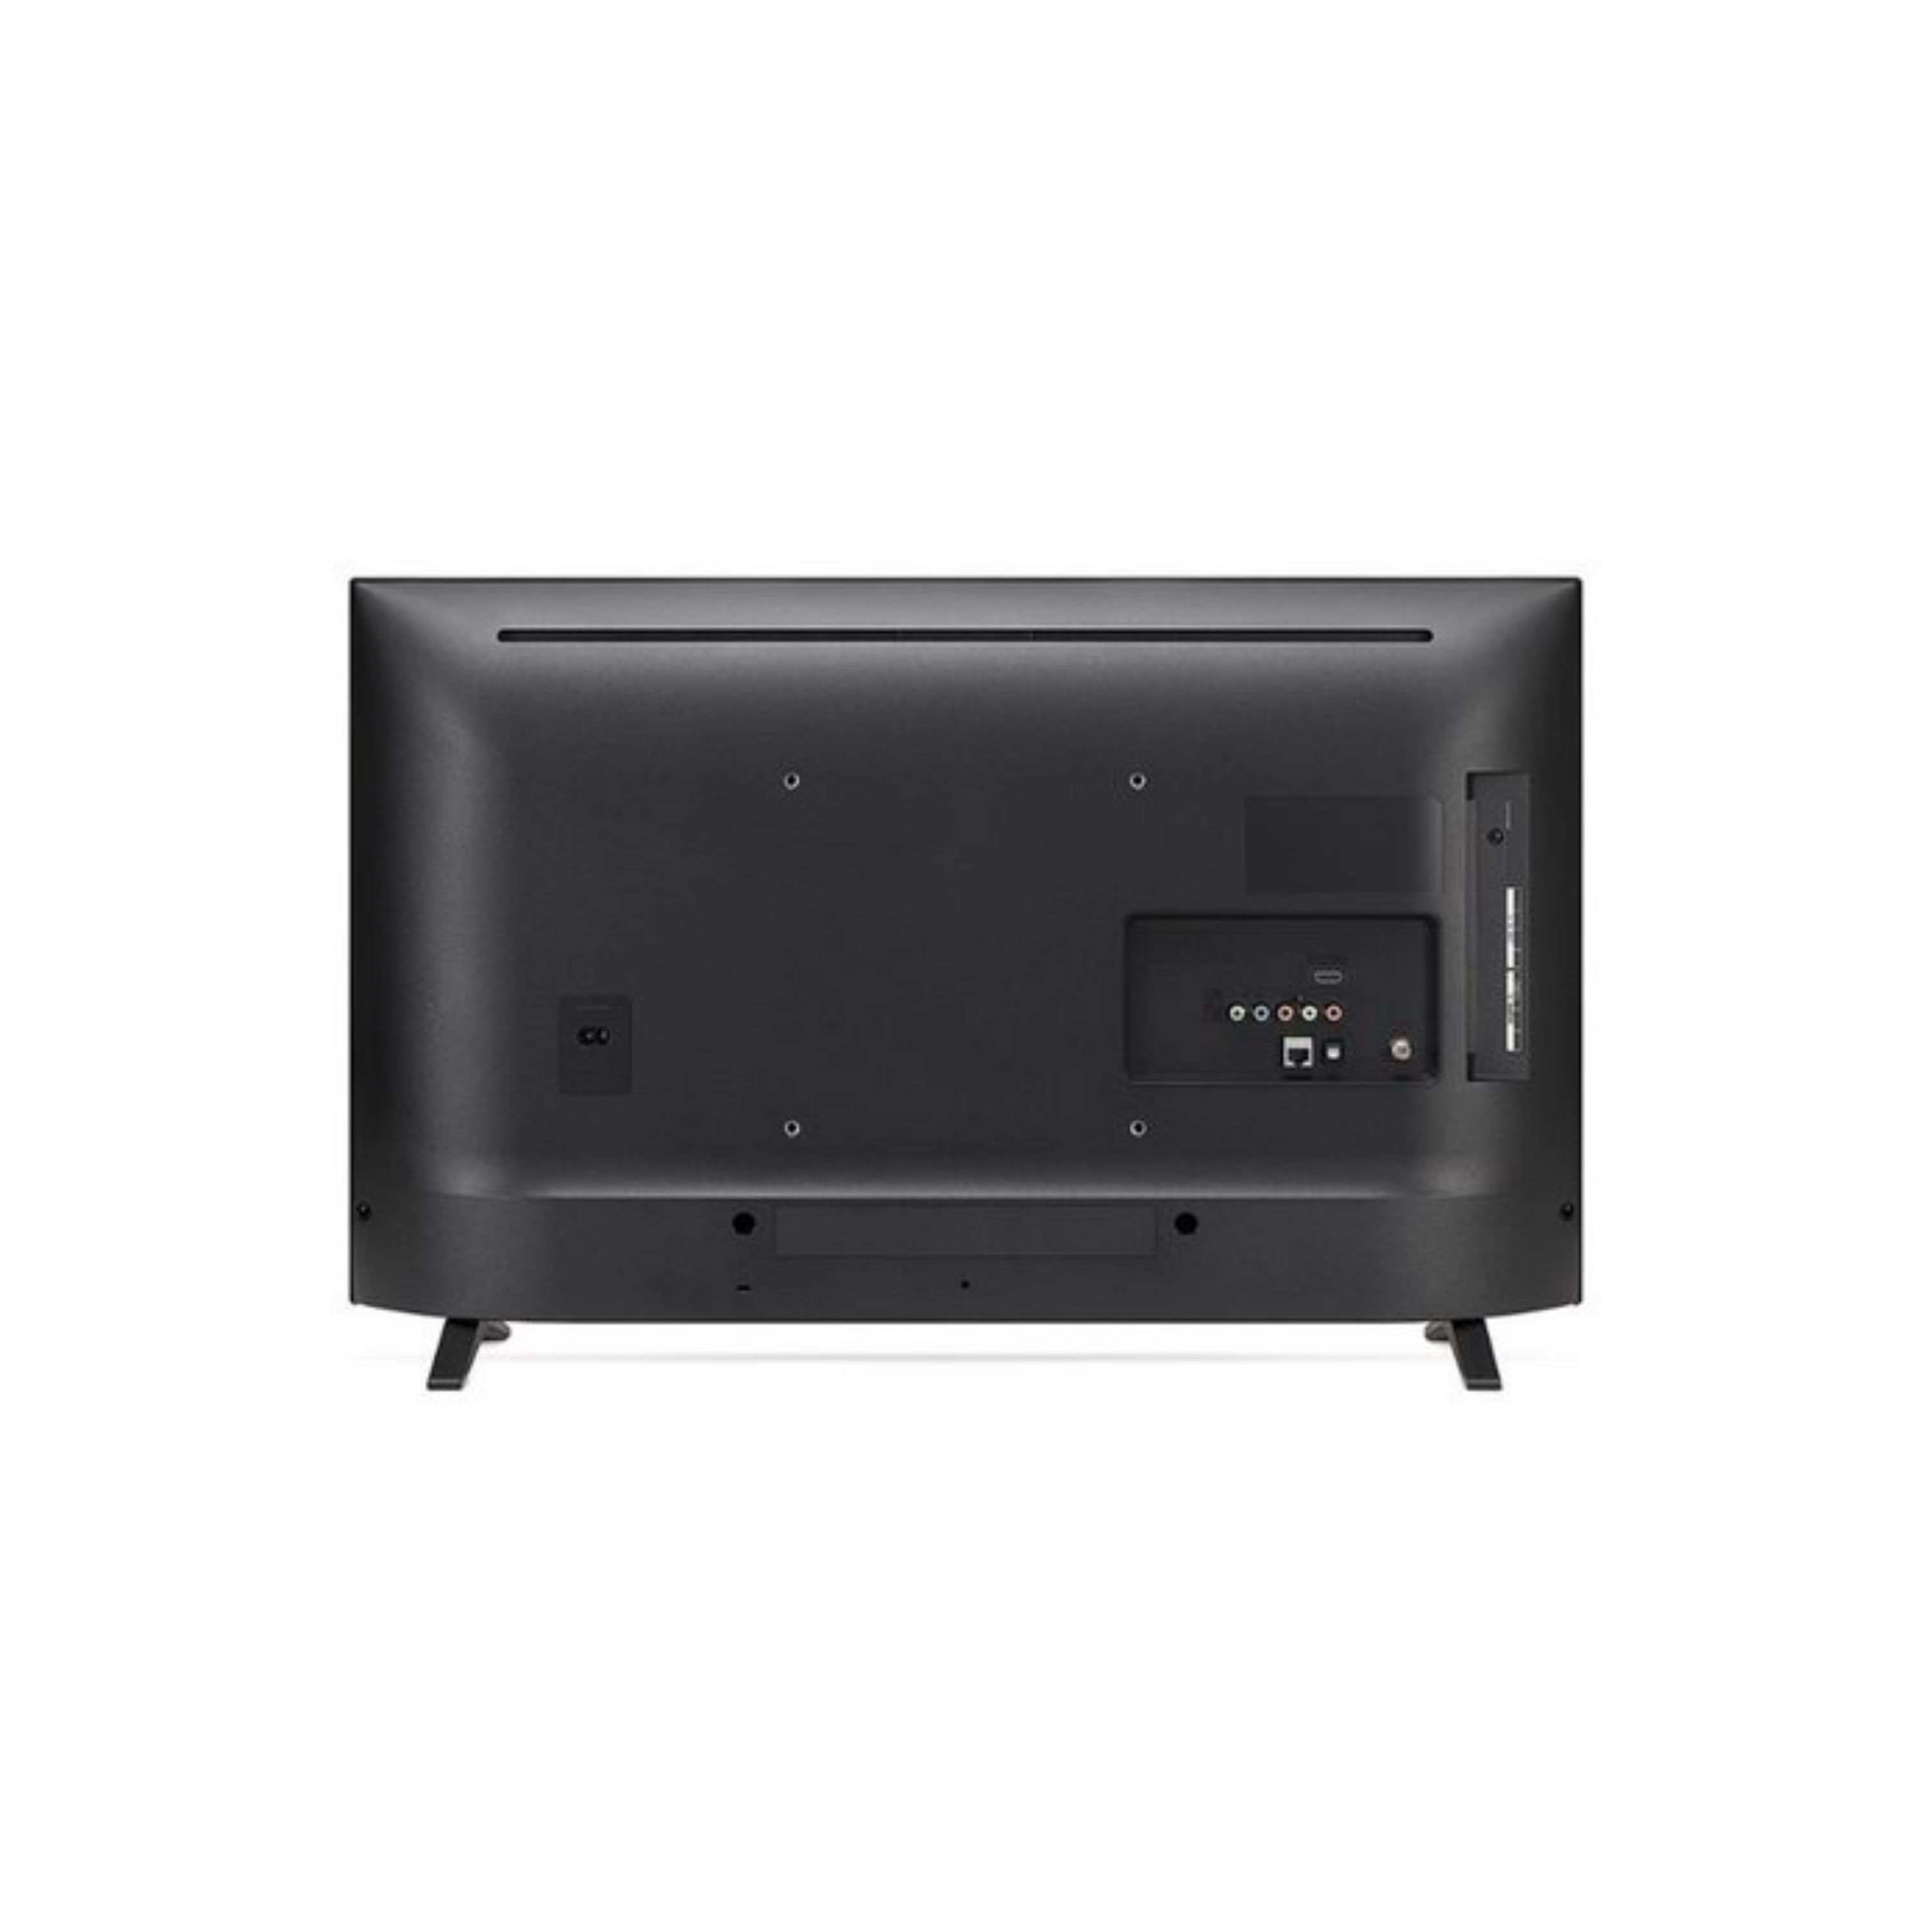 LG 43” Full HD LED TV 43LM5500PTA